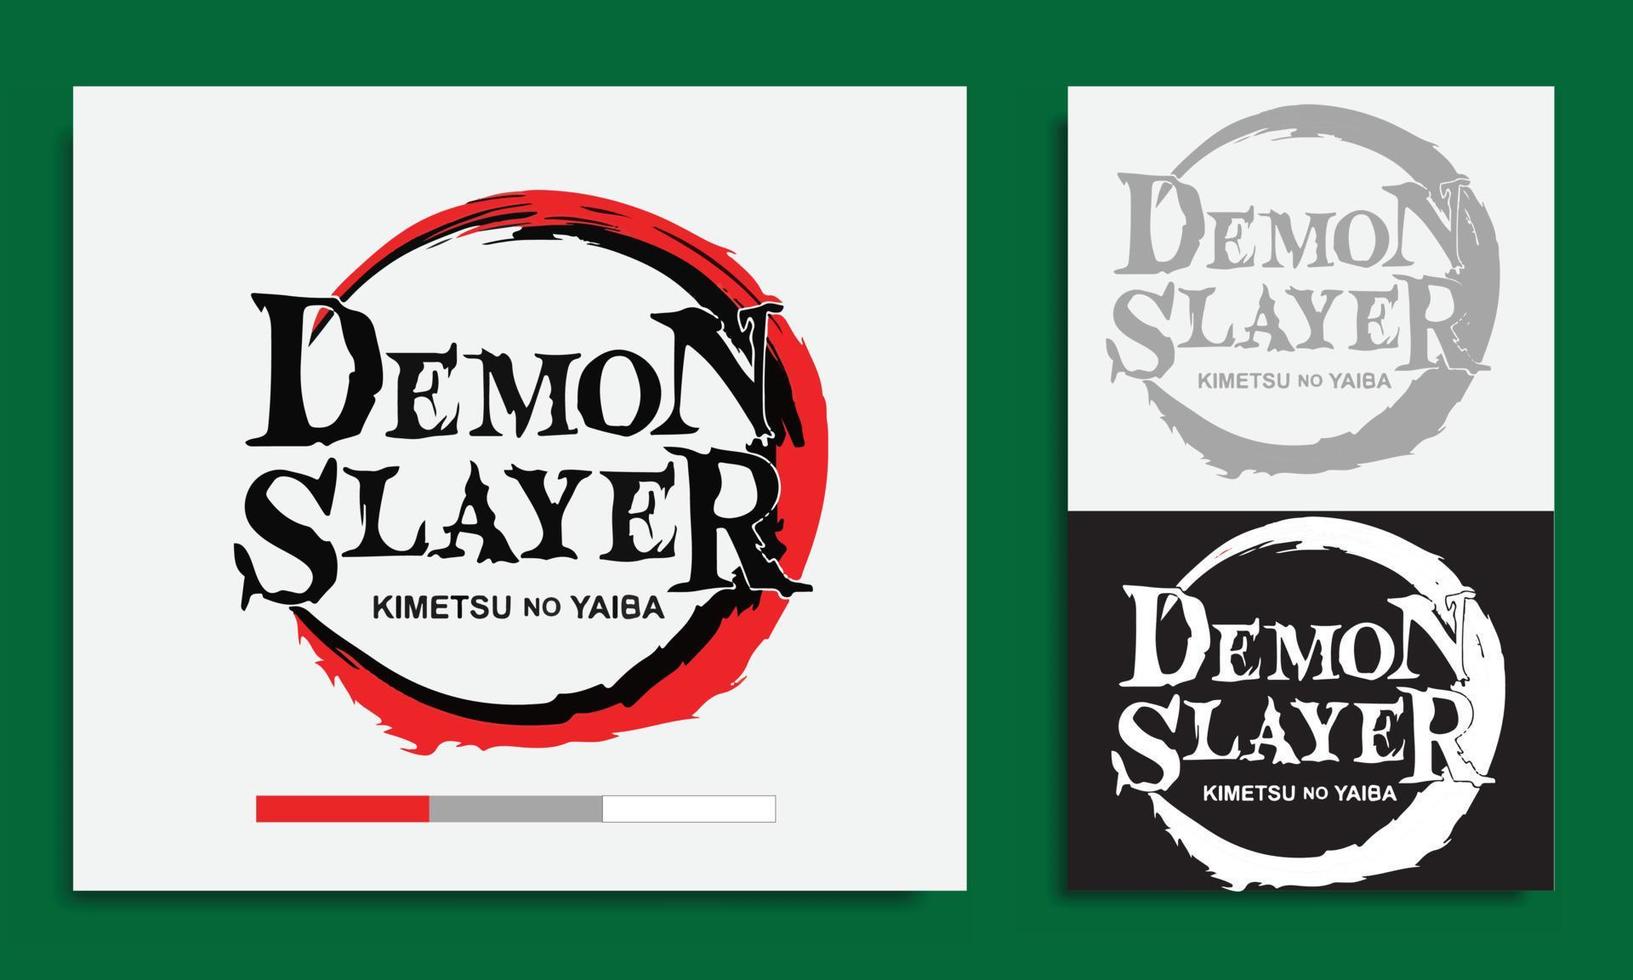 kimetsu no yaiba oder demon slayer logo manga und anime einzeln auf grünem hintergrund englische version vektor